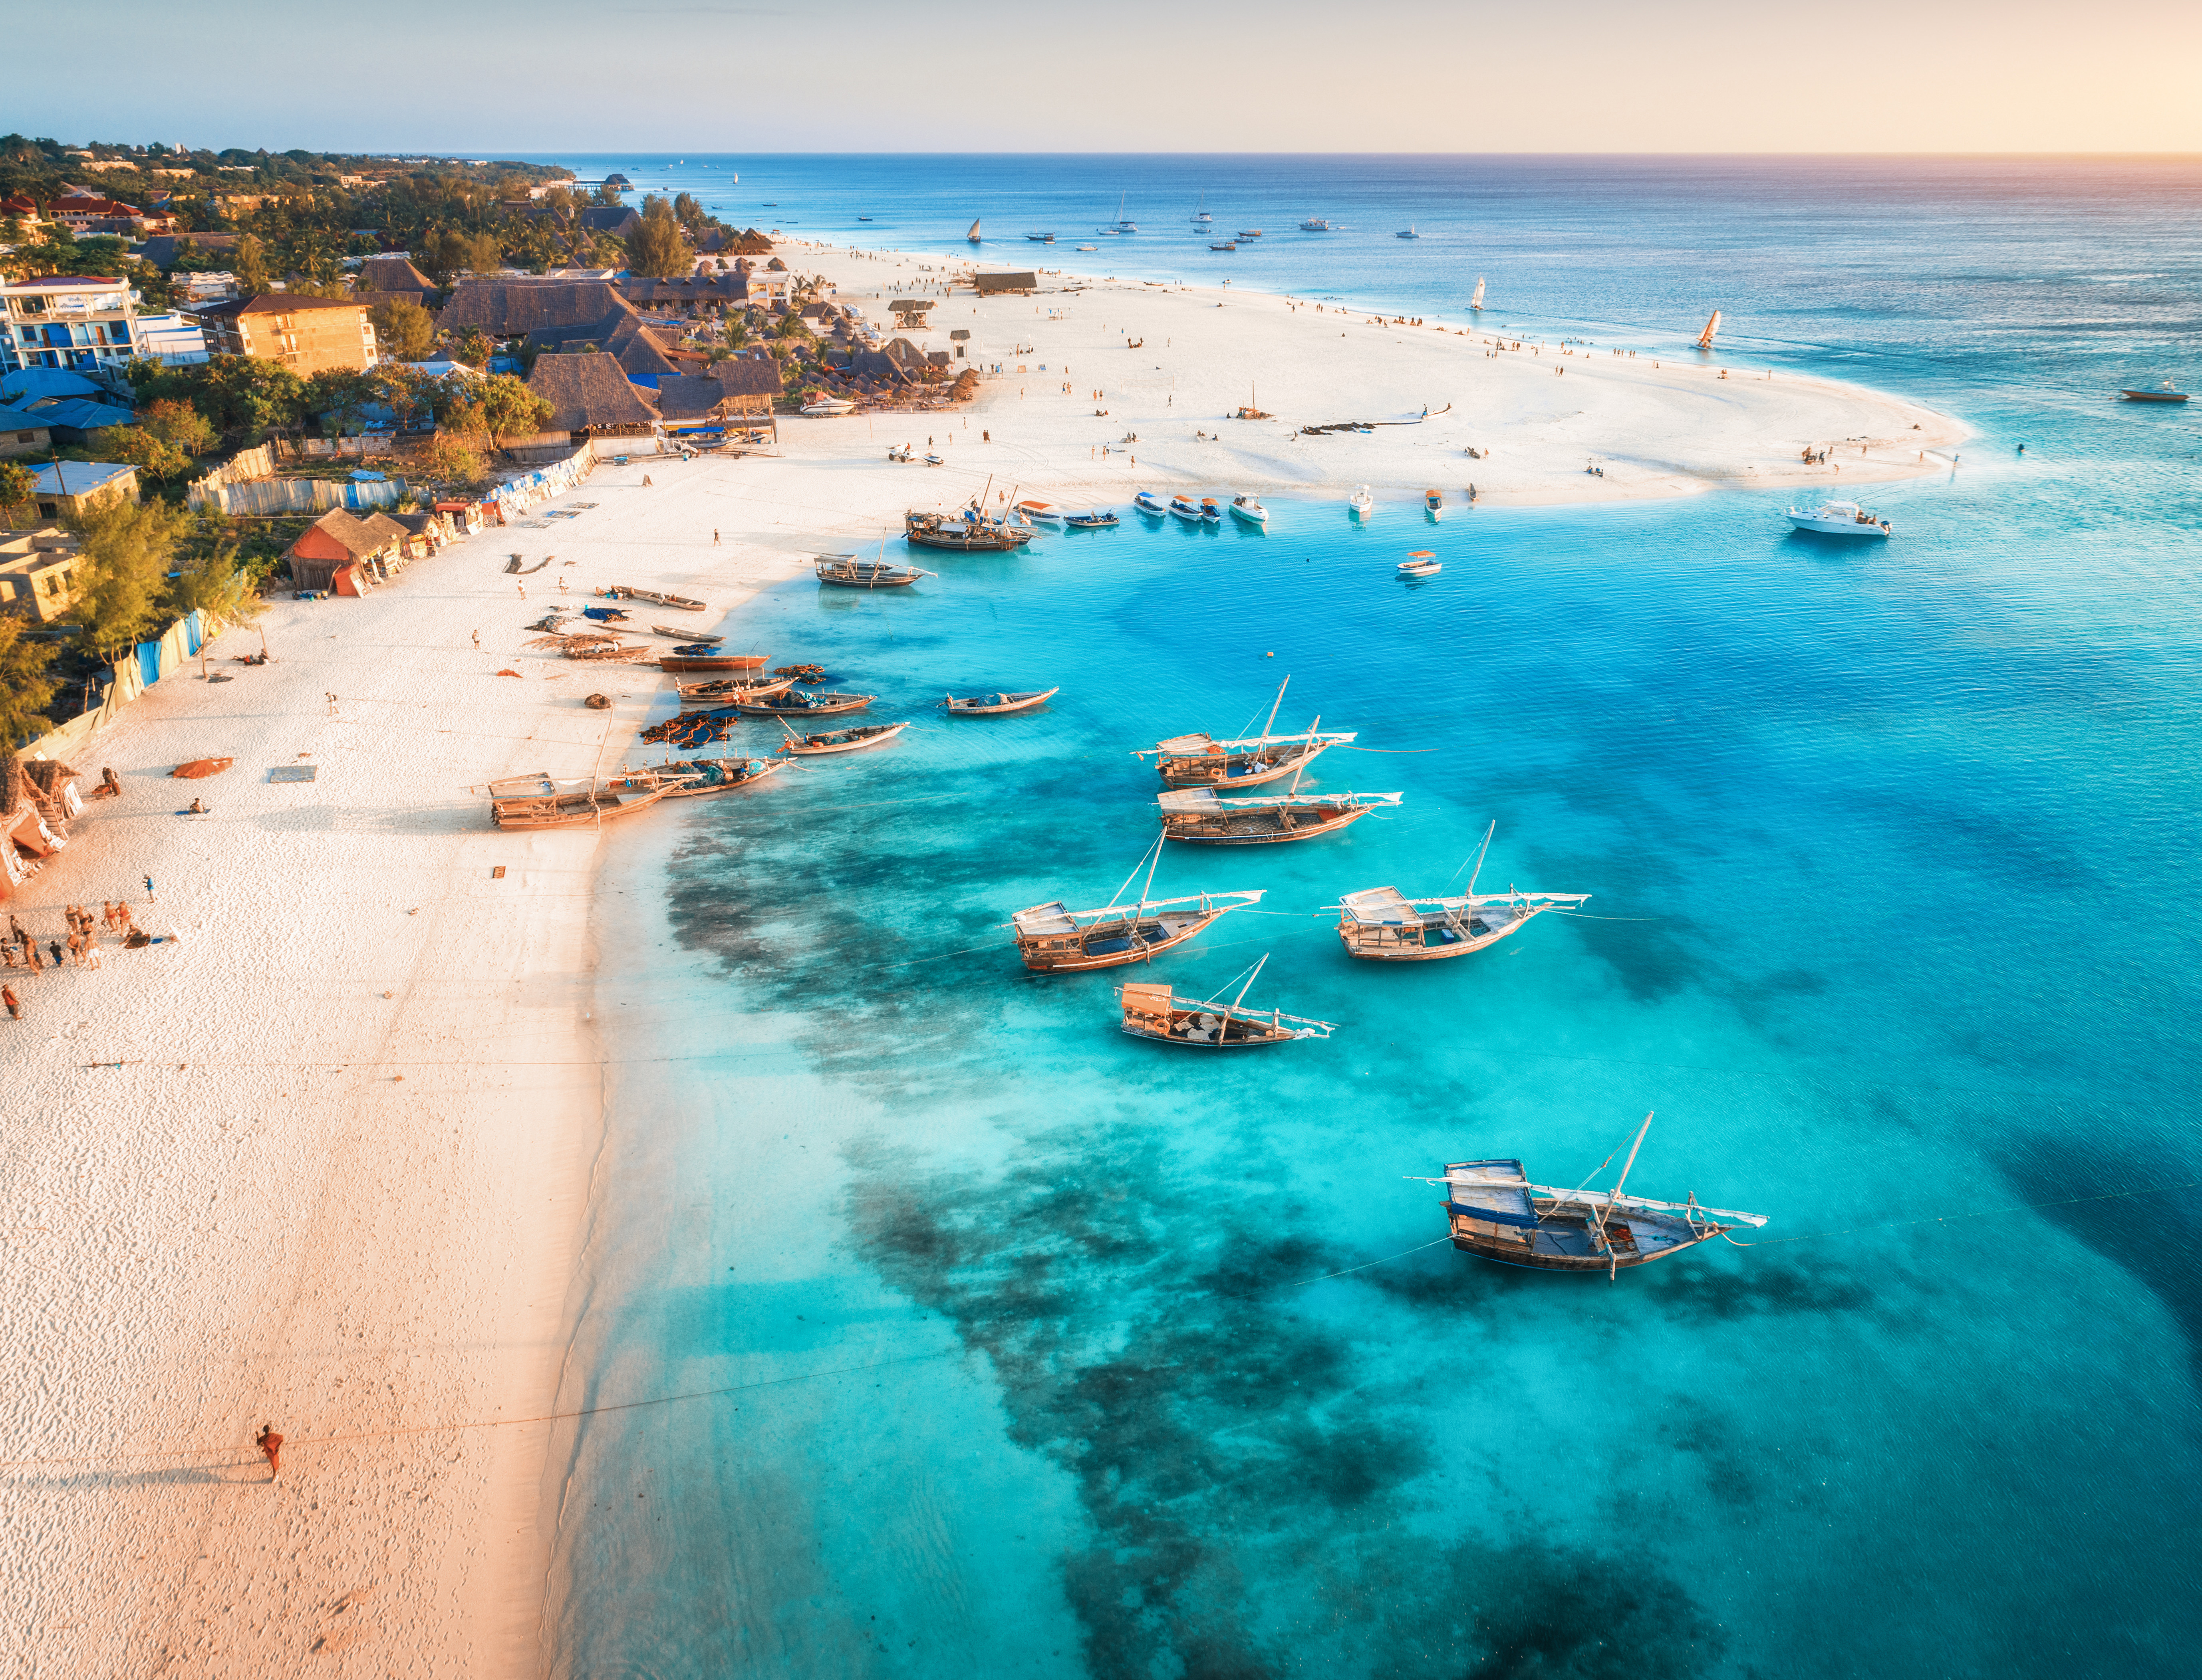 Strand og krystalklart blåt hav kommer ind på Zanzibar kyst